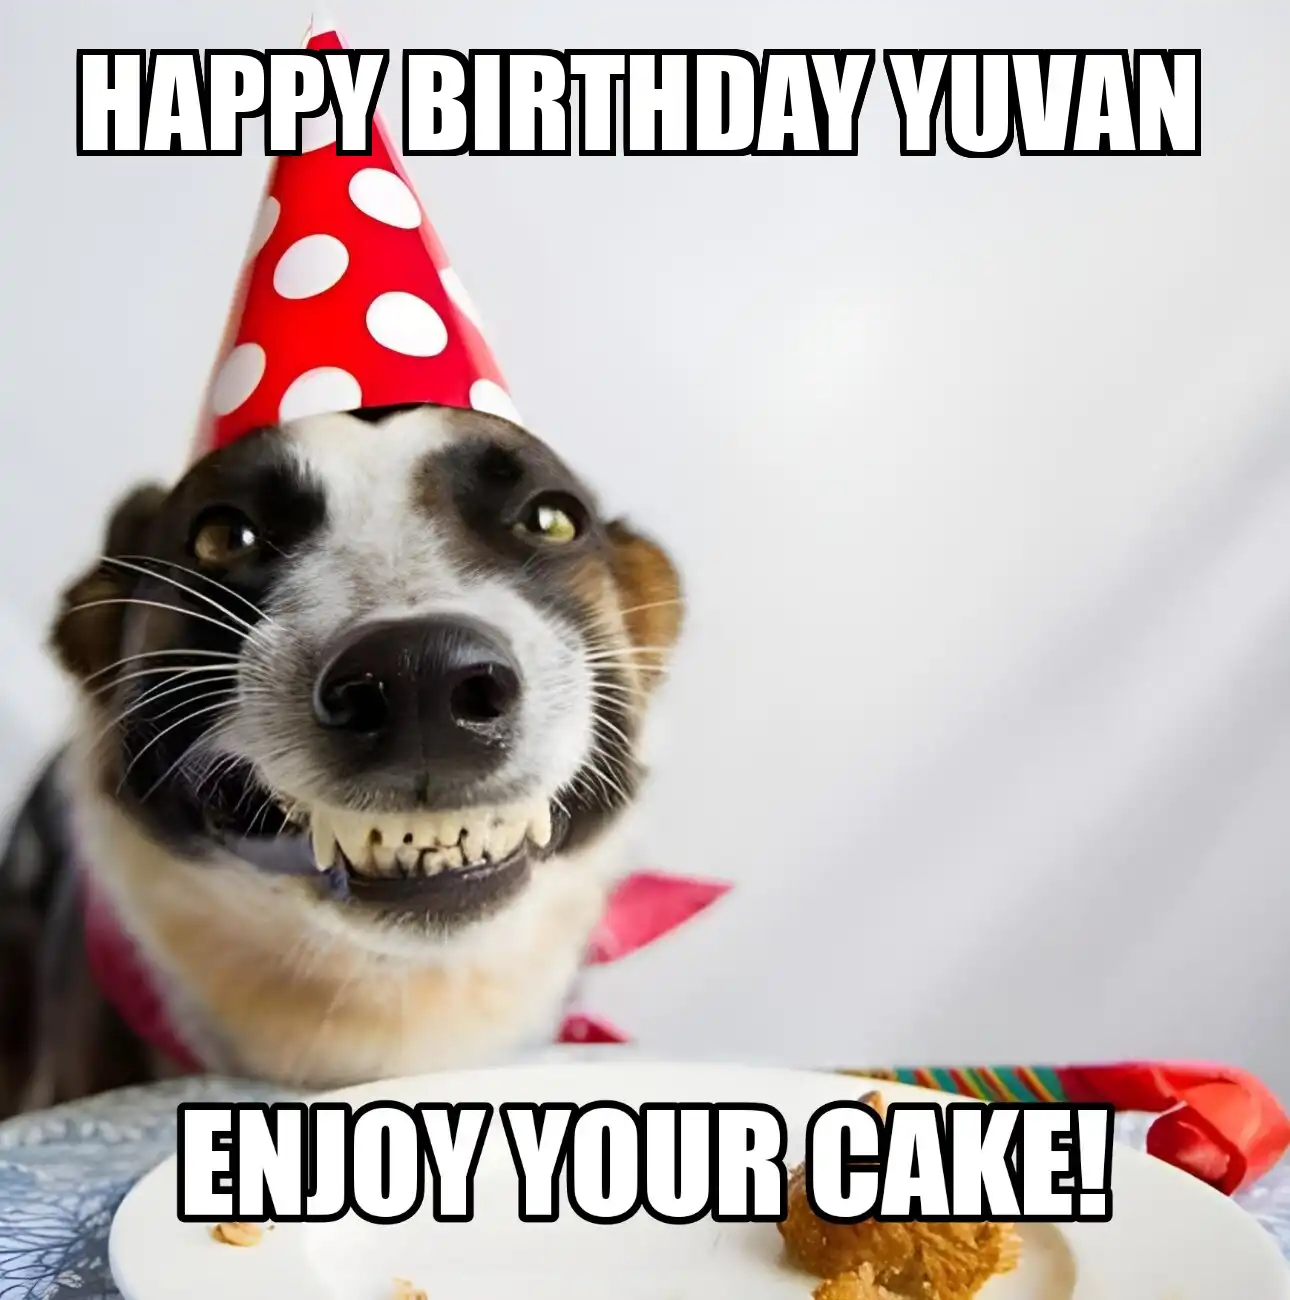 Happy Birthday Yuvan Enjoy Your Cake Dog Meme